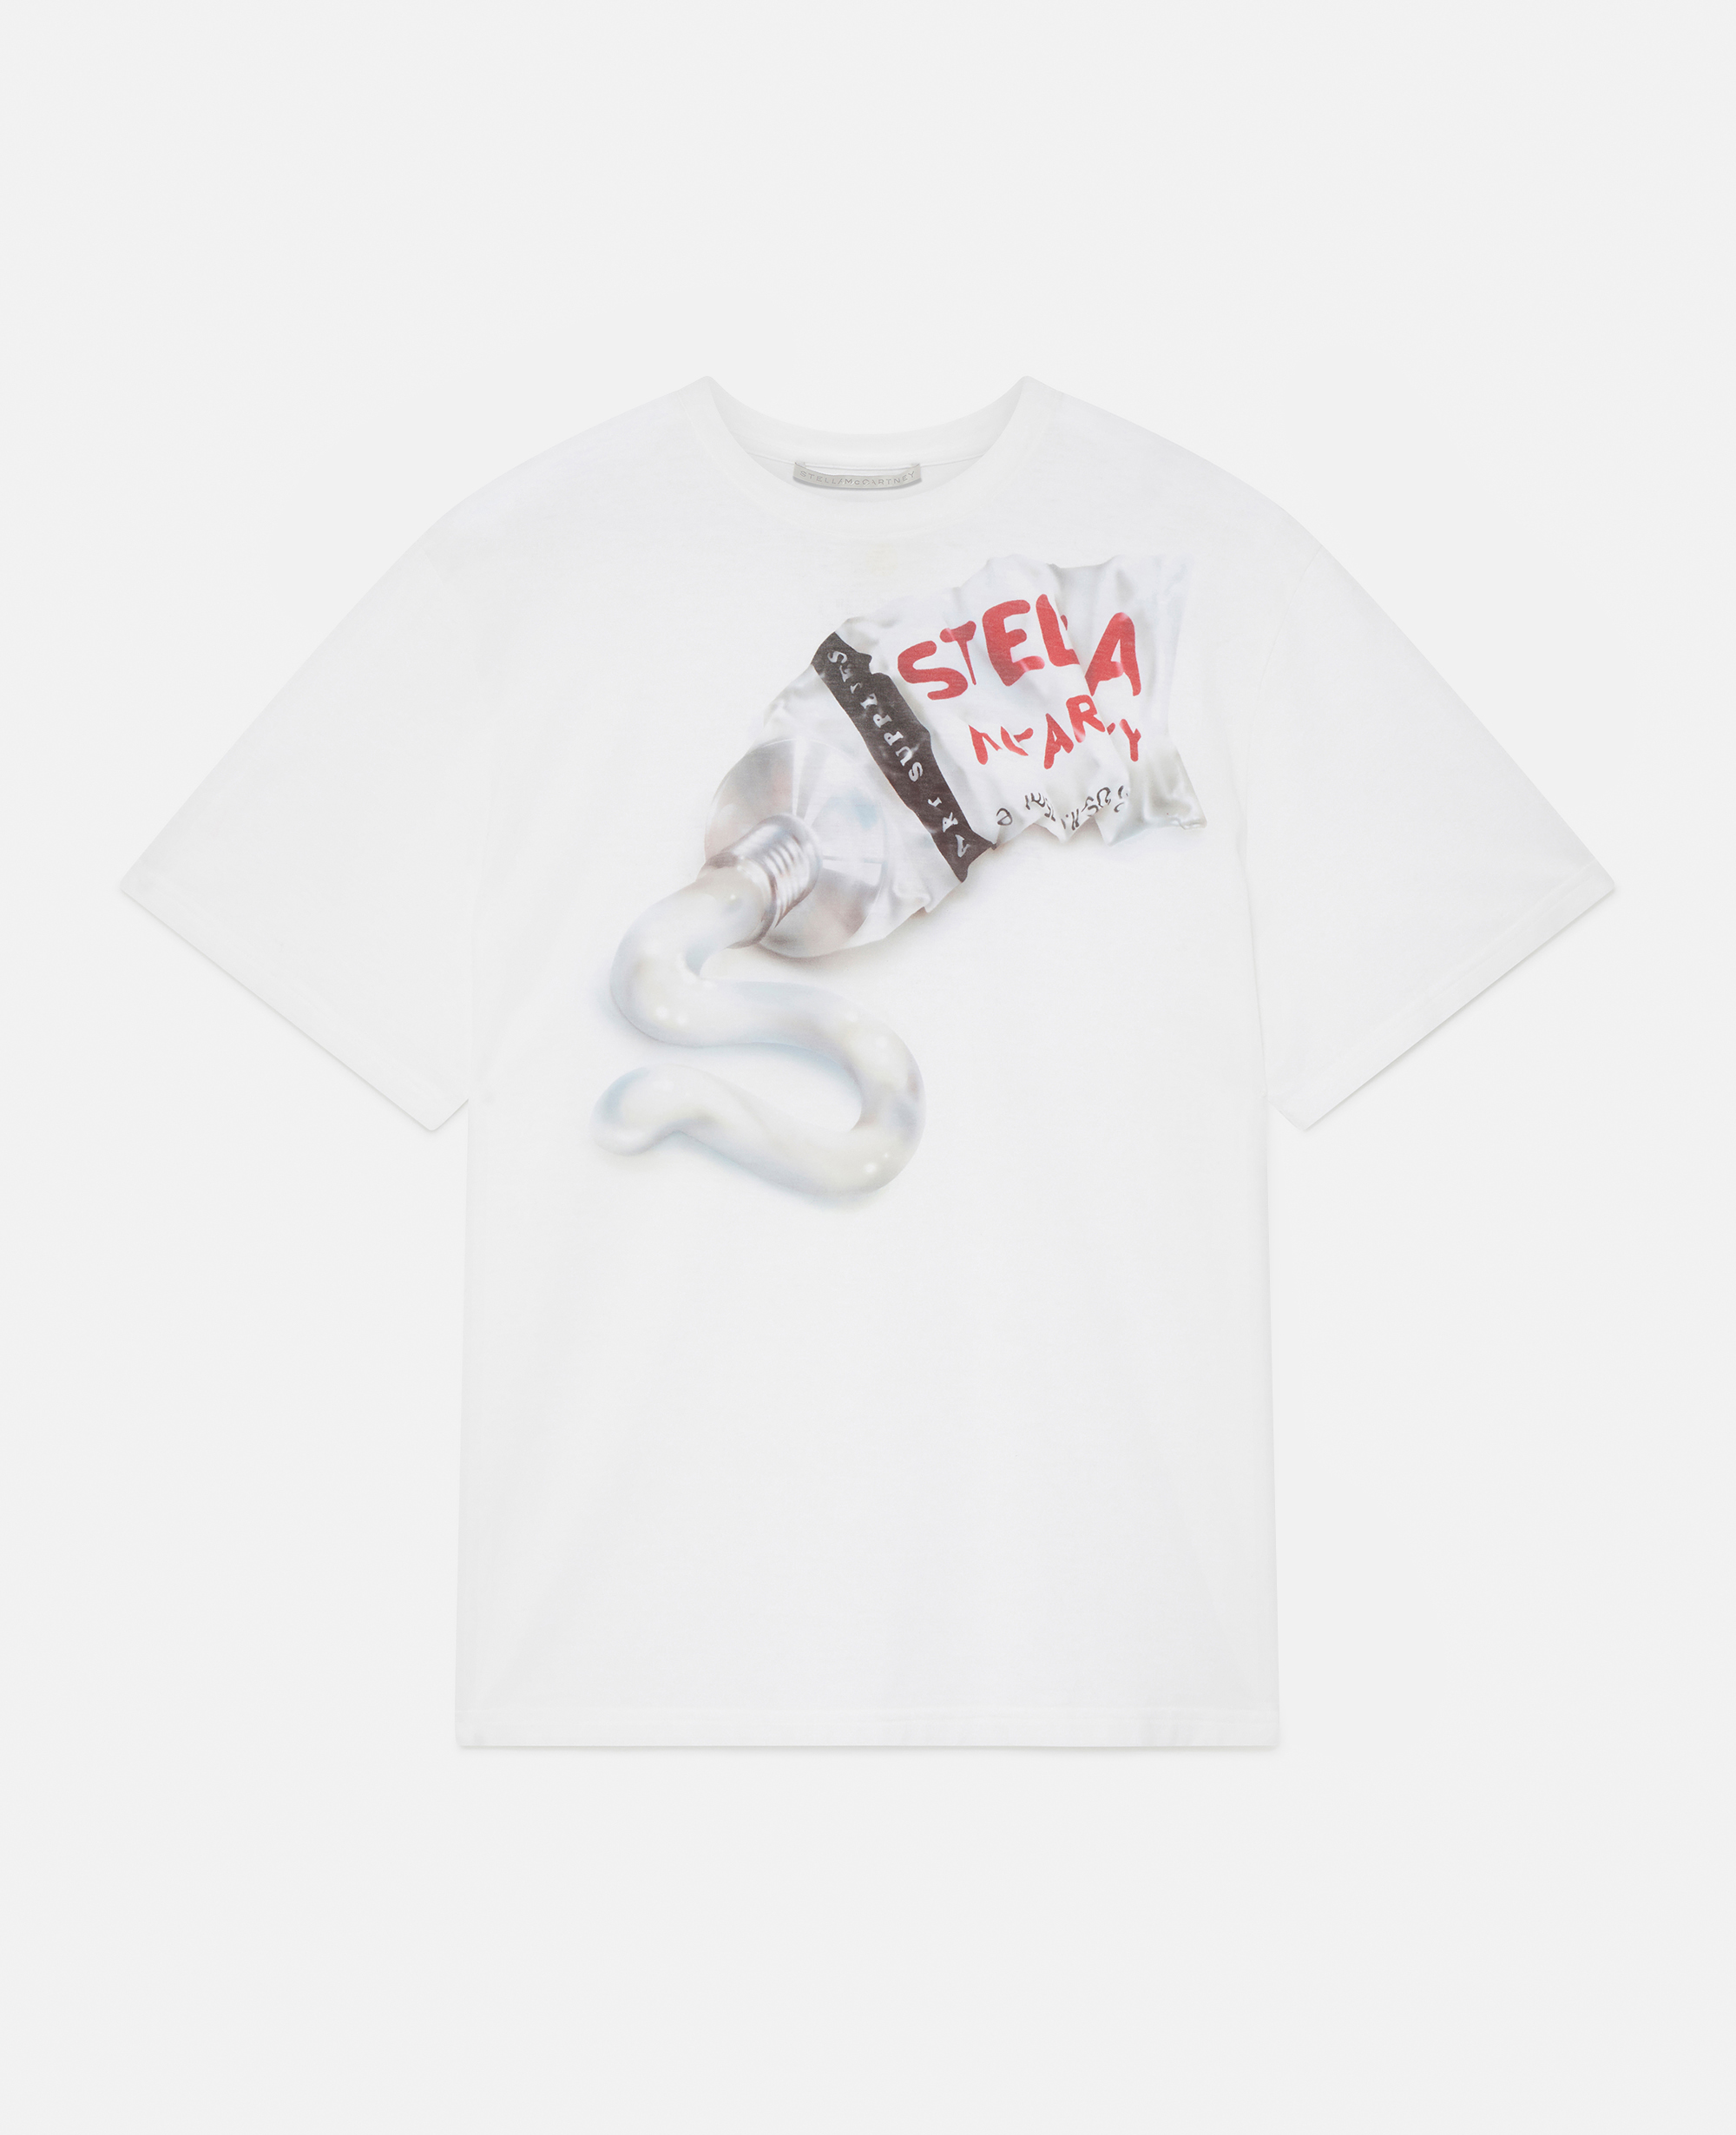 Stella McCartney - T-shirt oversize à imprimé tube de peinture Stella Logo, Femme, Blanc pur, Taille: 36